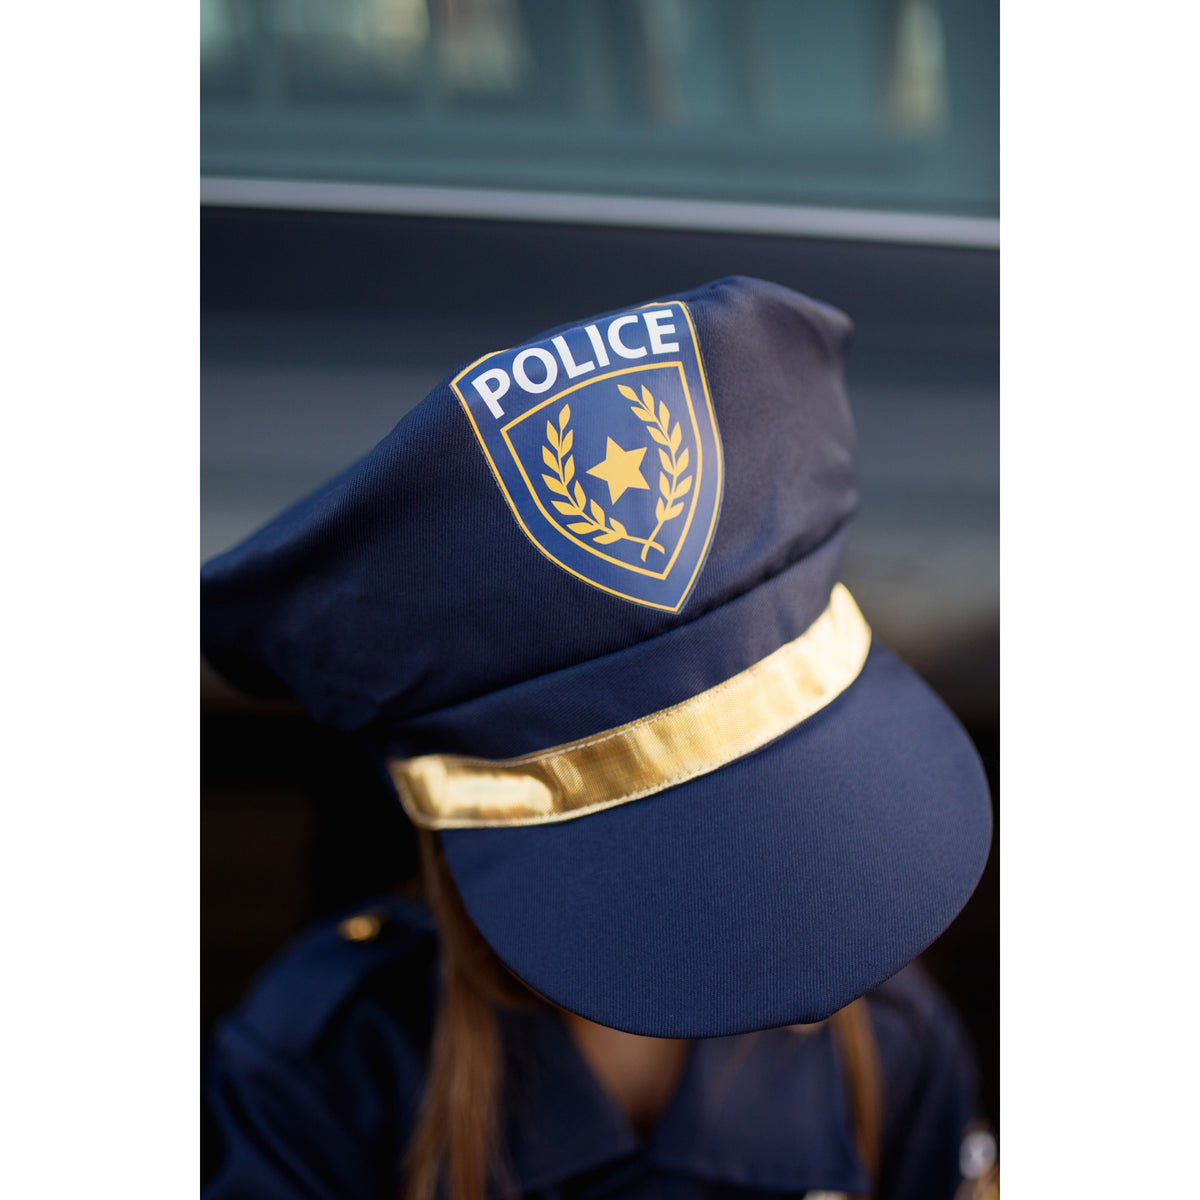 Das Polizisten-Set enthält: Jacke, Mütze, Handschellen, Walkie Talkie, Abzeichen und Namensschild.